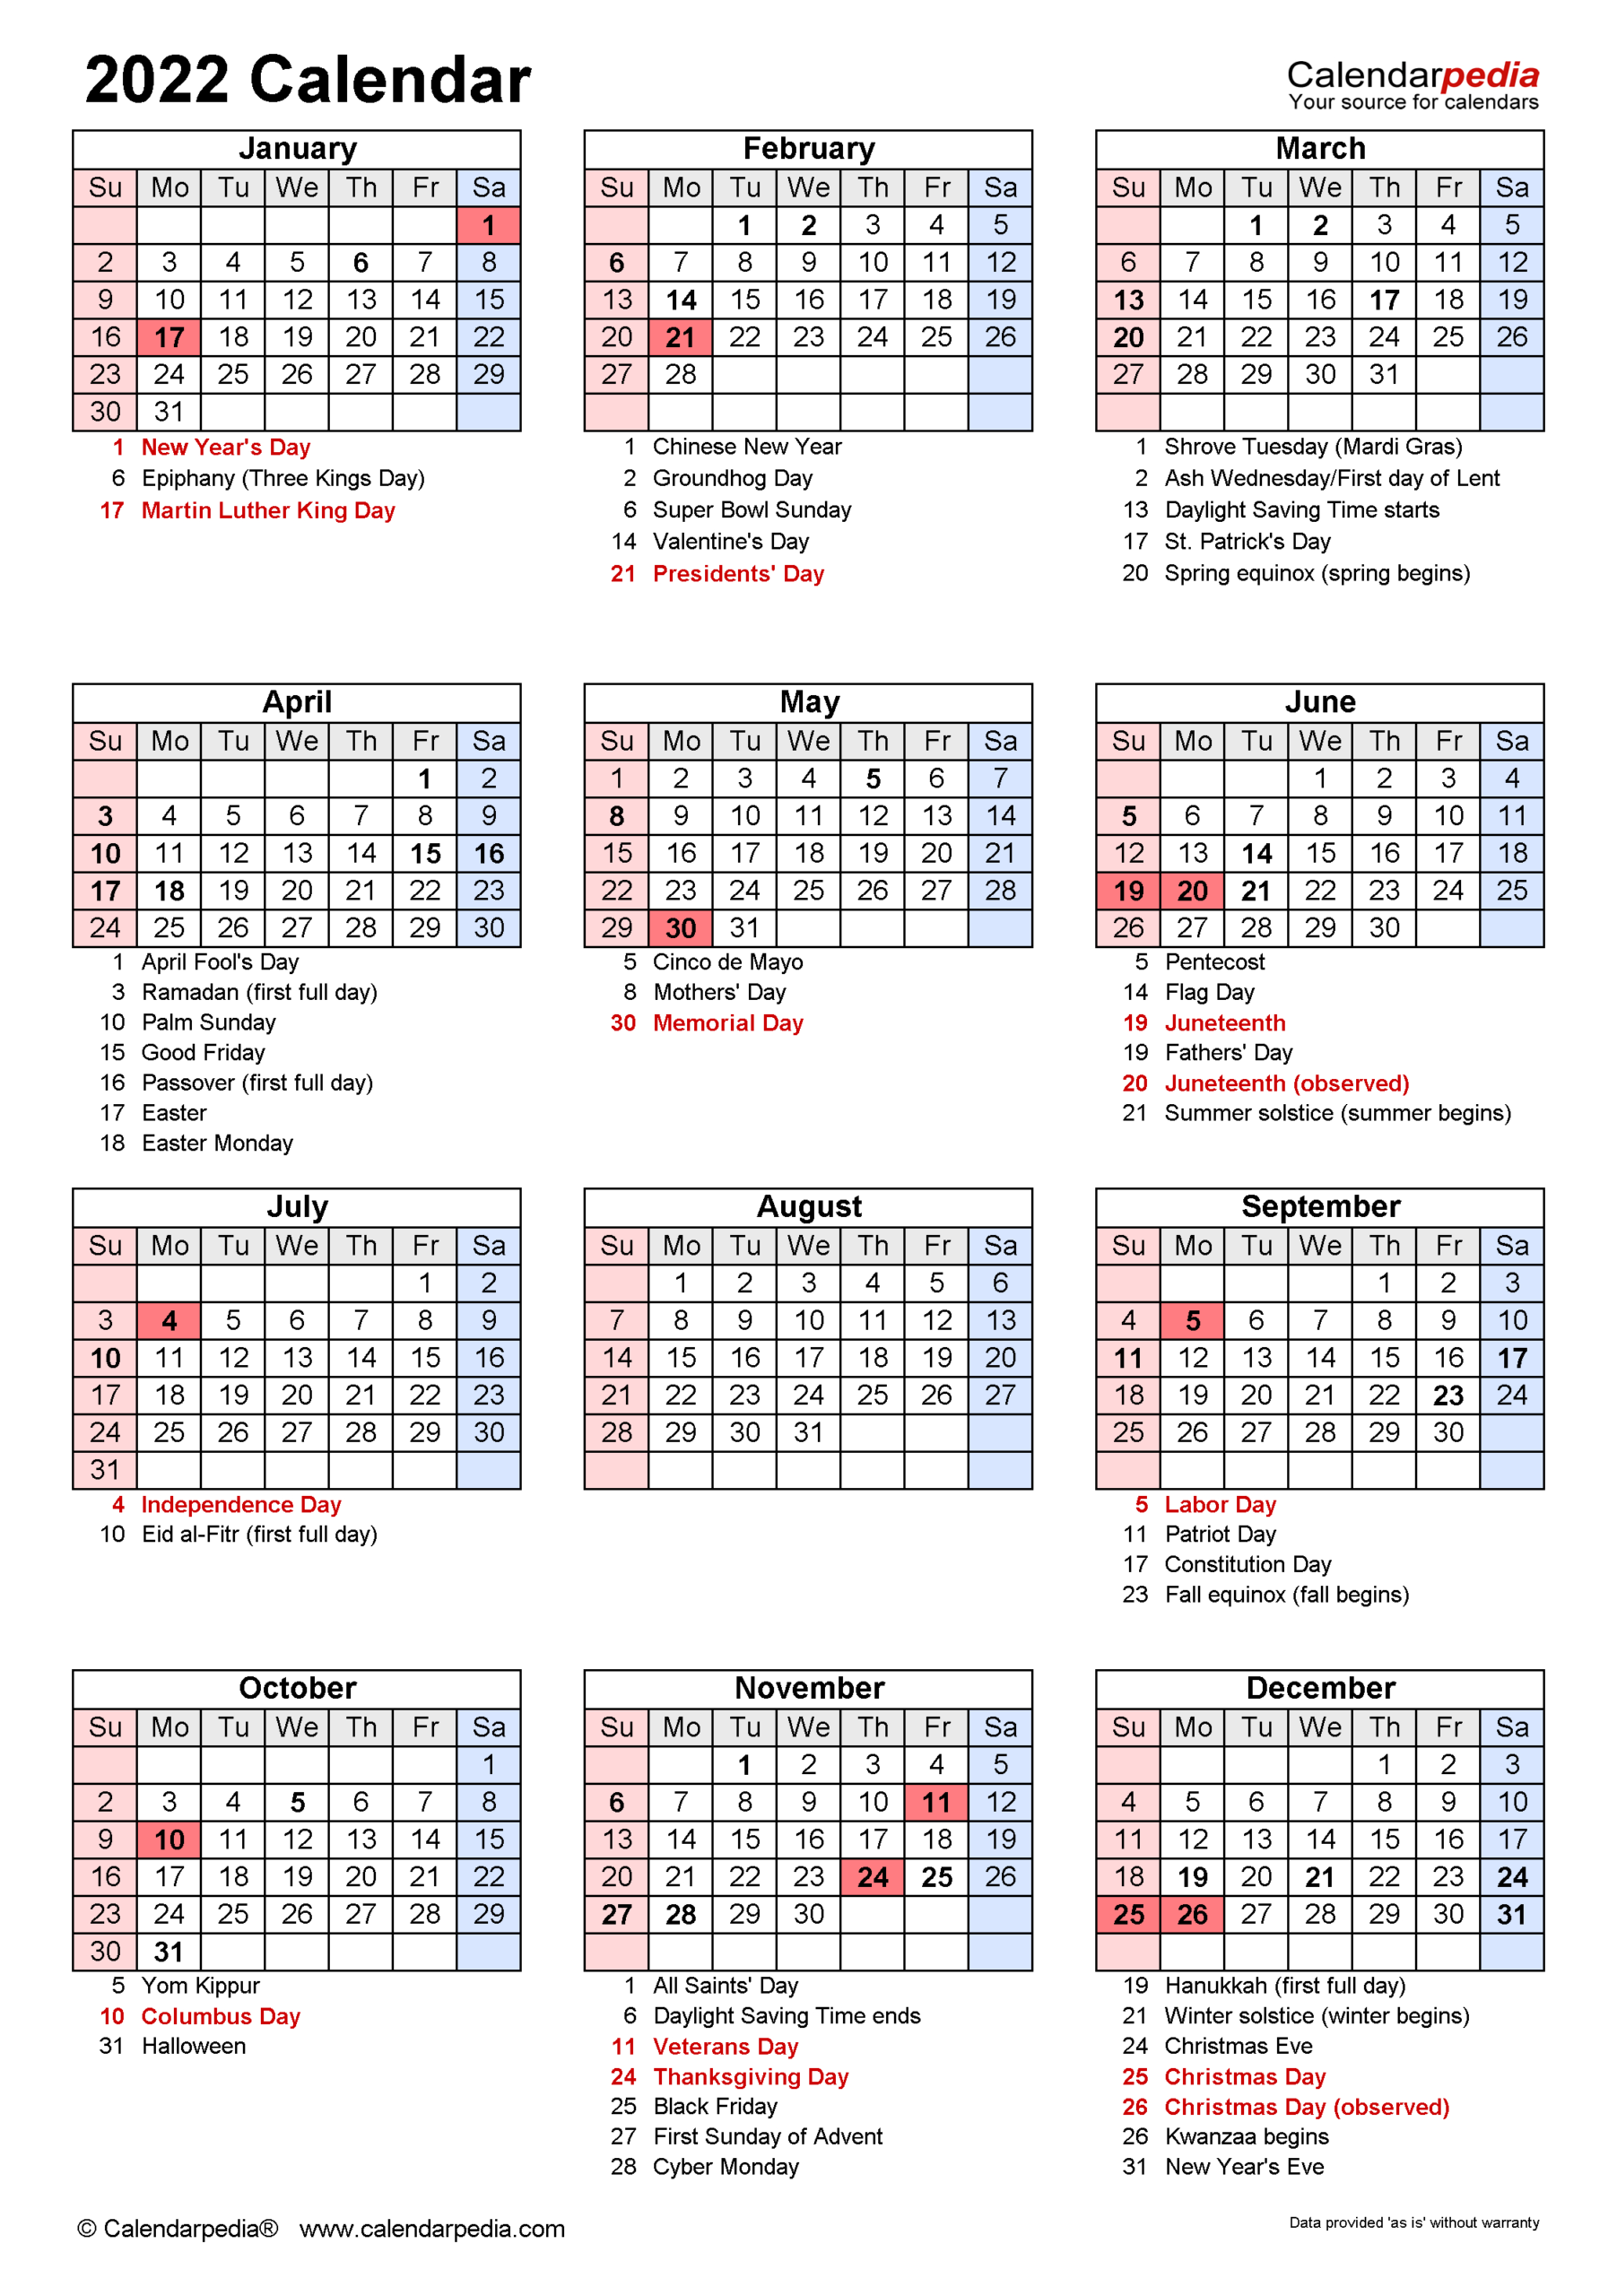 2022 Calendar Printable One Page  Free Printable Calendars And for Printable Free 2022 Calendar Without Downloading